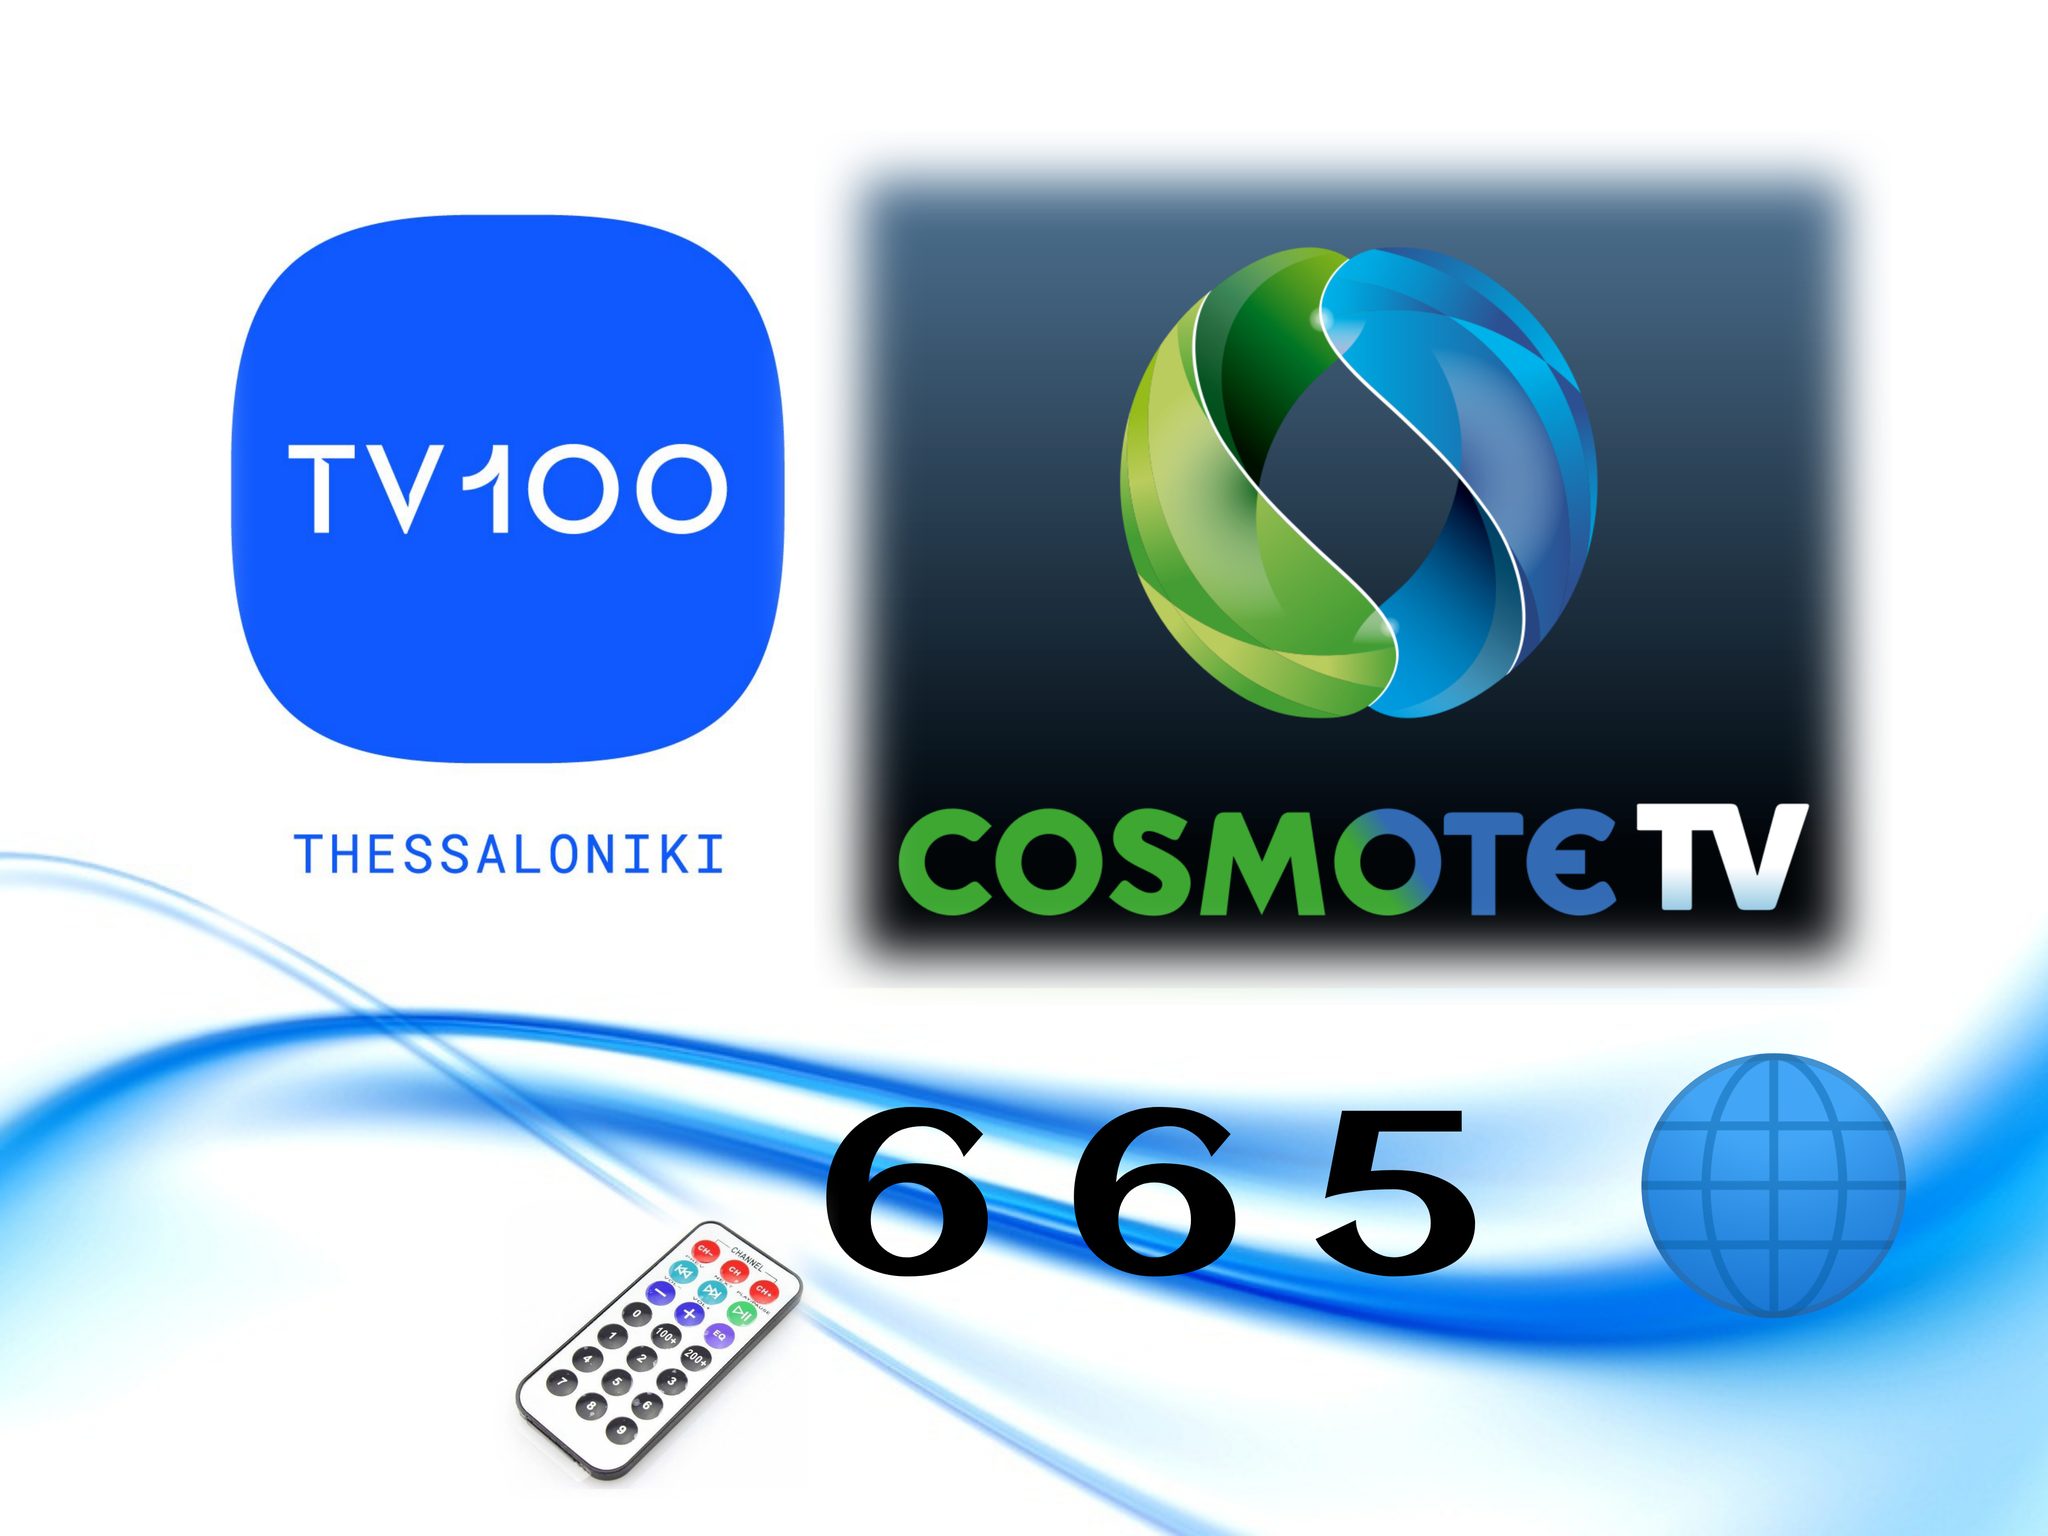 Από την Παρασκευή 25 Φεβρουαρίου 2022 παρακολουθούν πλέον τη Δημοτική Τηλεόραση TV100 και μέσα από την πλατφόρμα της COSMOTE TV στο κανάλι 665